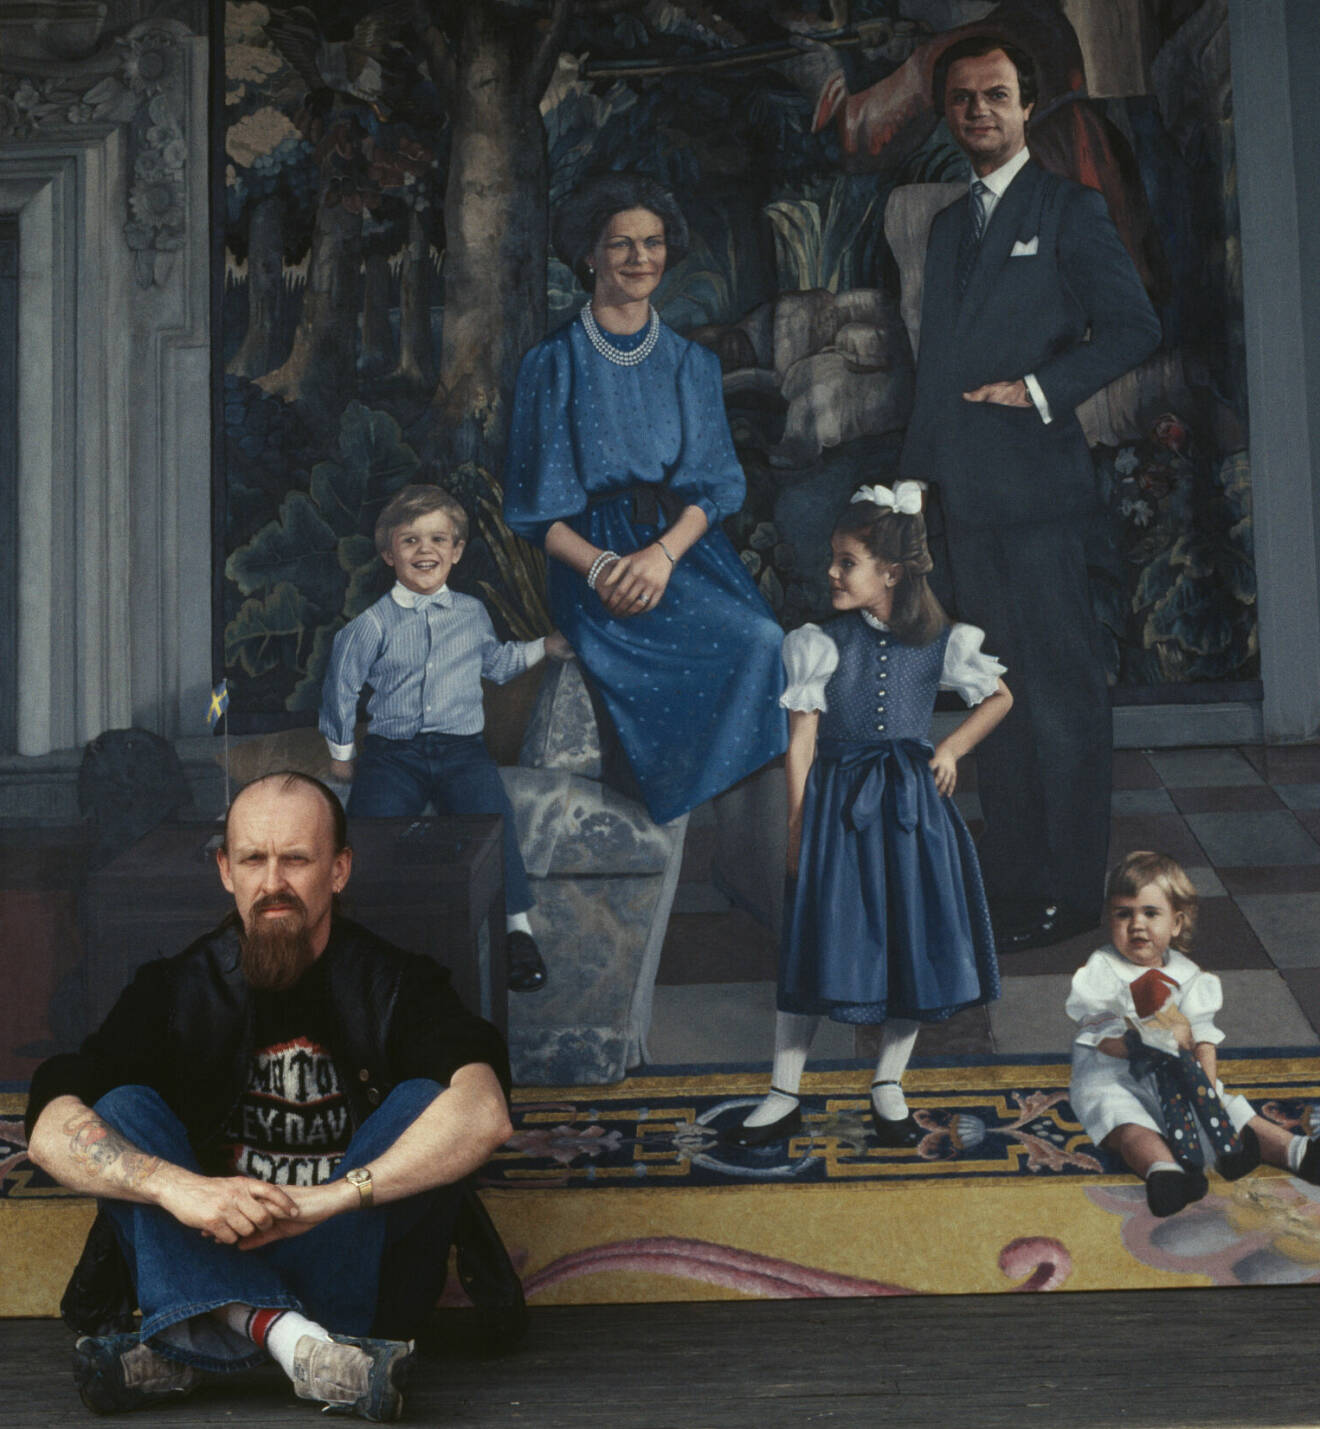 Konstnären John-Erik Franzéns målning av kungafamiljen